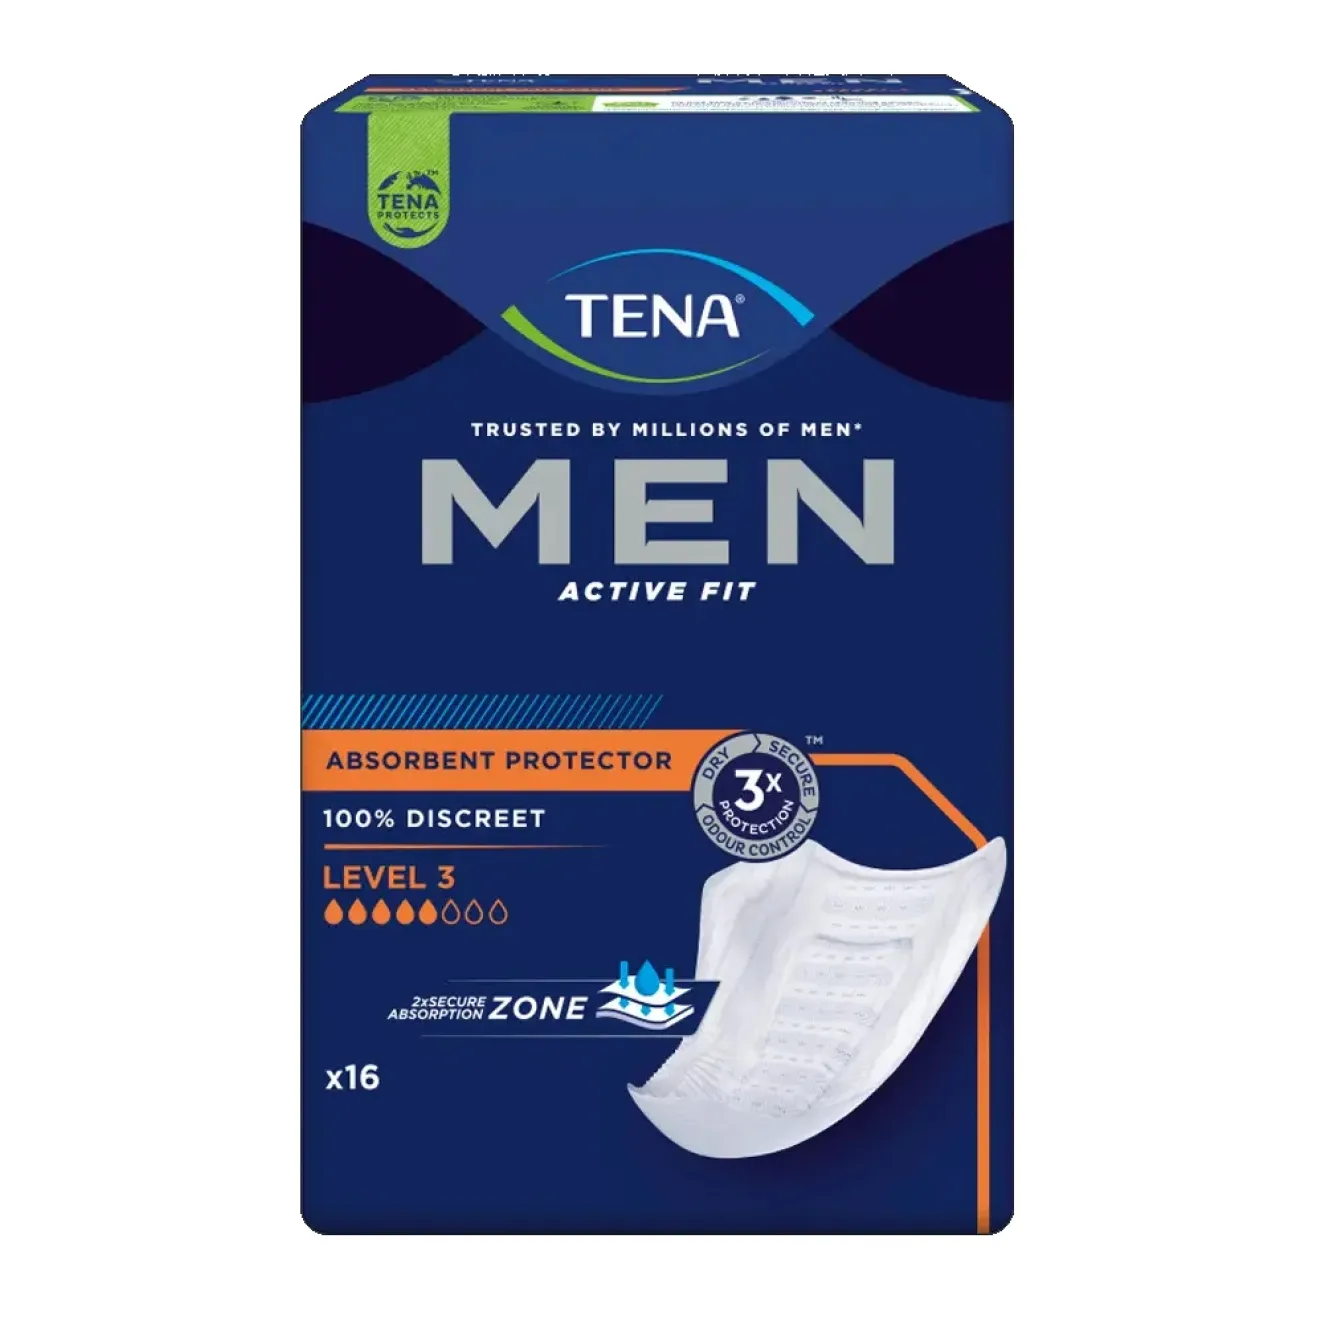 TENA MEN Active Fit Level 3 Inkontinenz Einlagen 6x16 ST